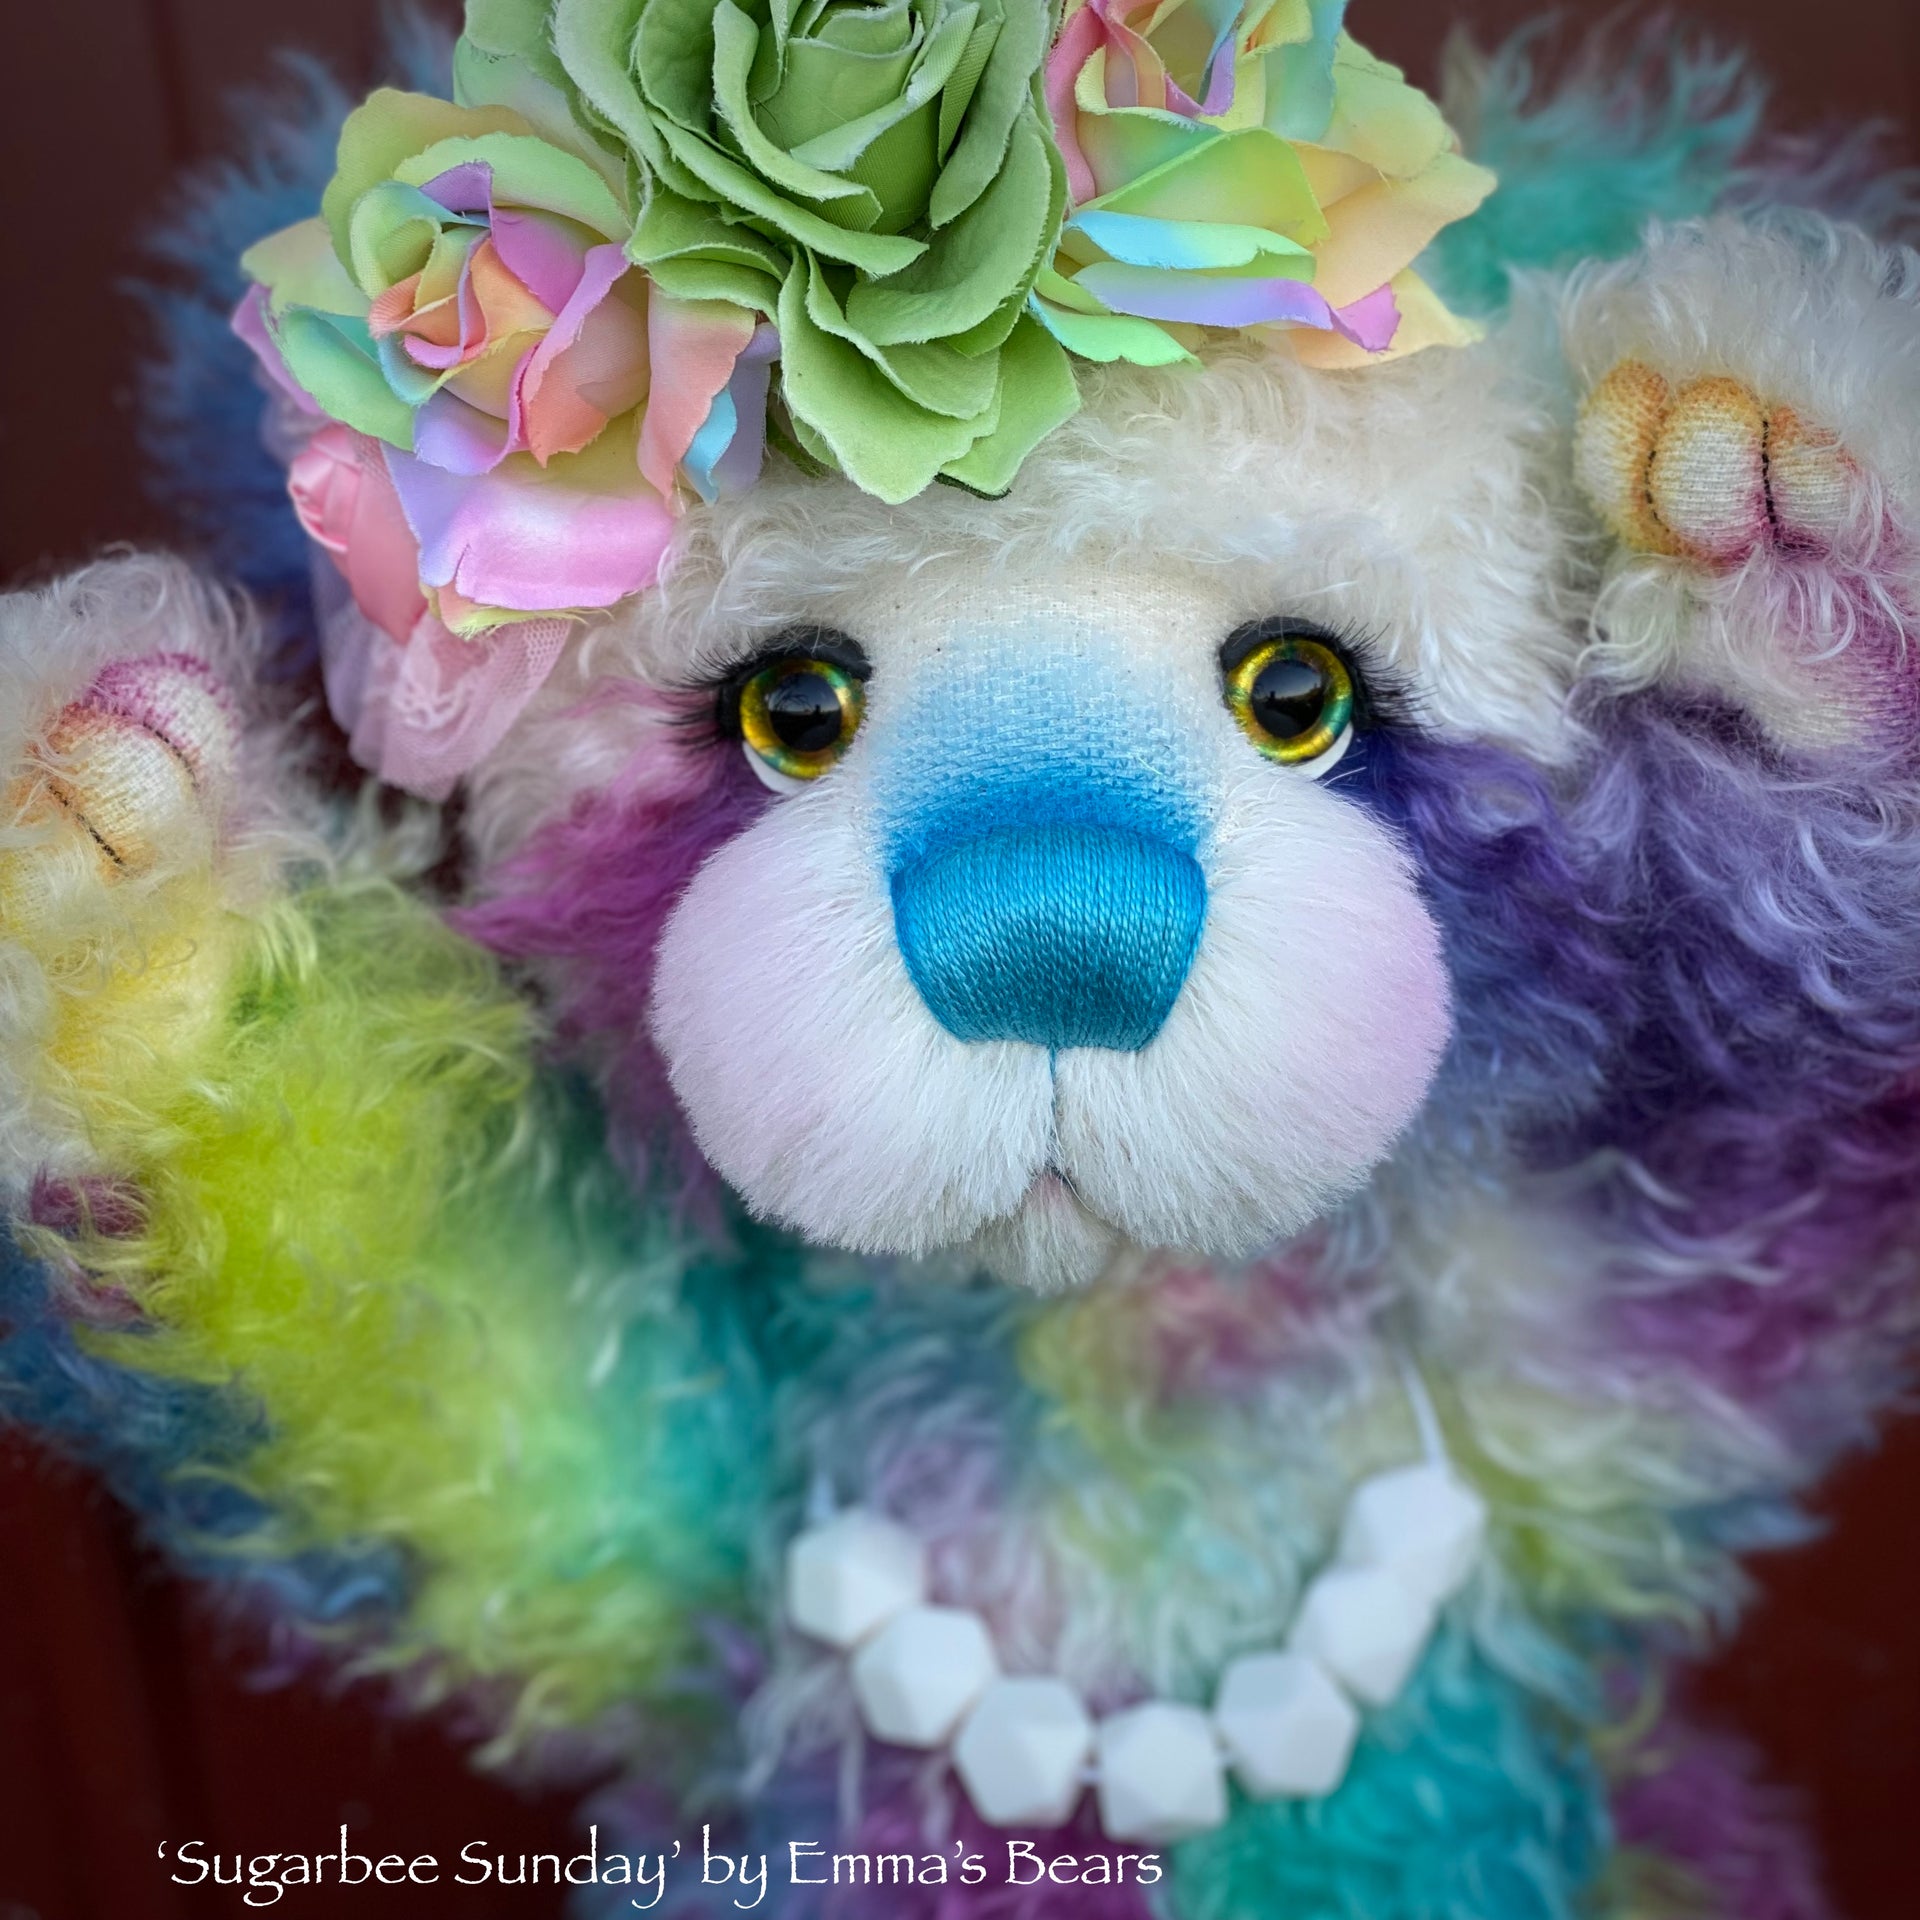 Sugarbee Sunday - 20" Hand-Dyed Rainbow mohair Artist Bear by Emma's Bears - OOAK